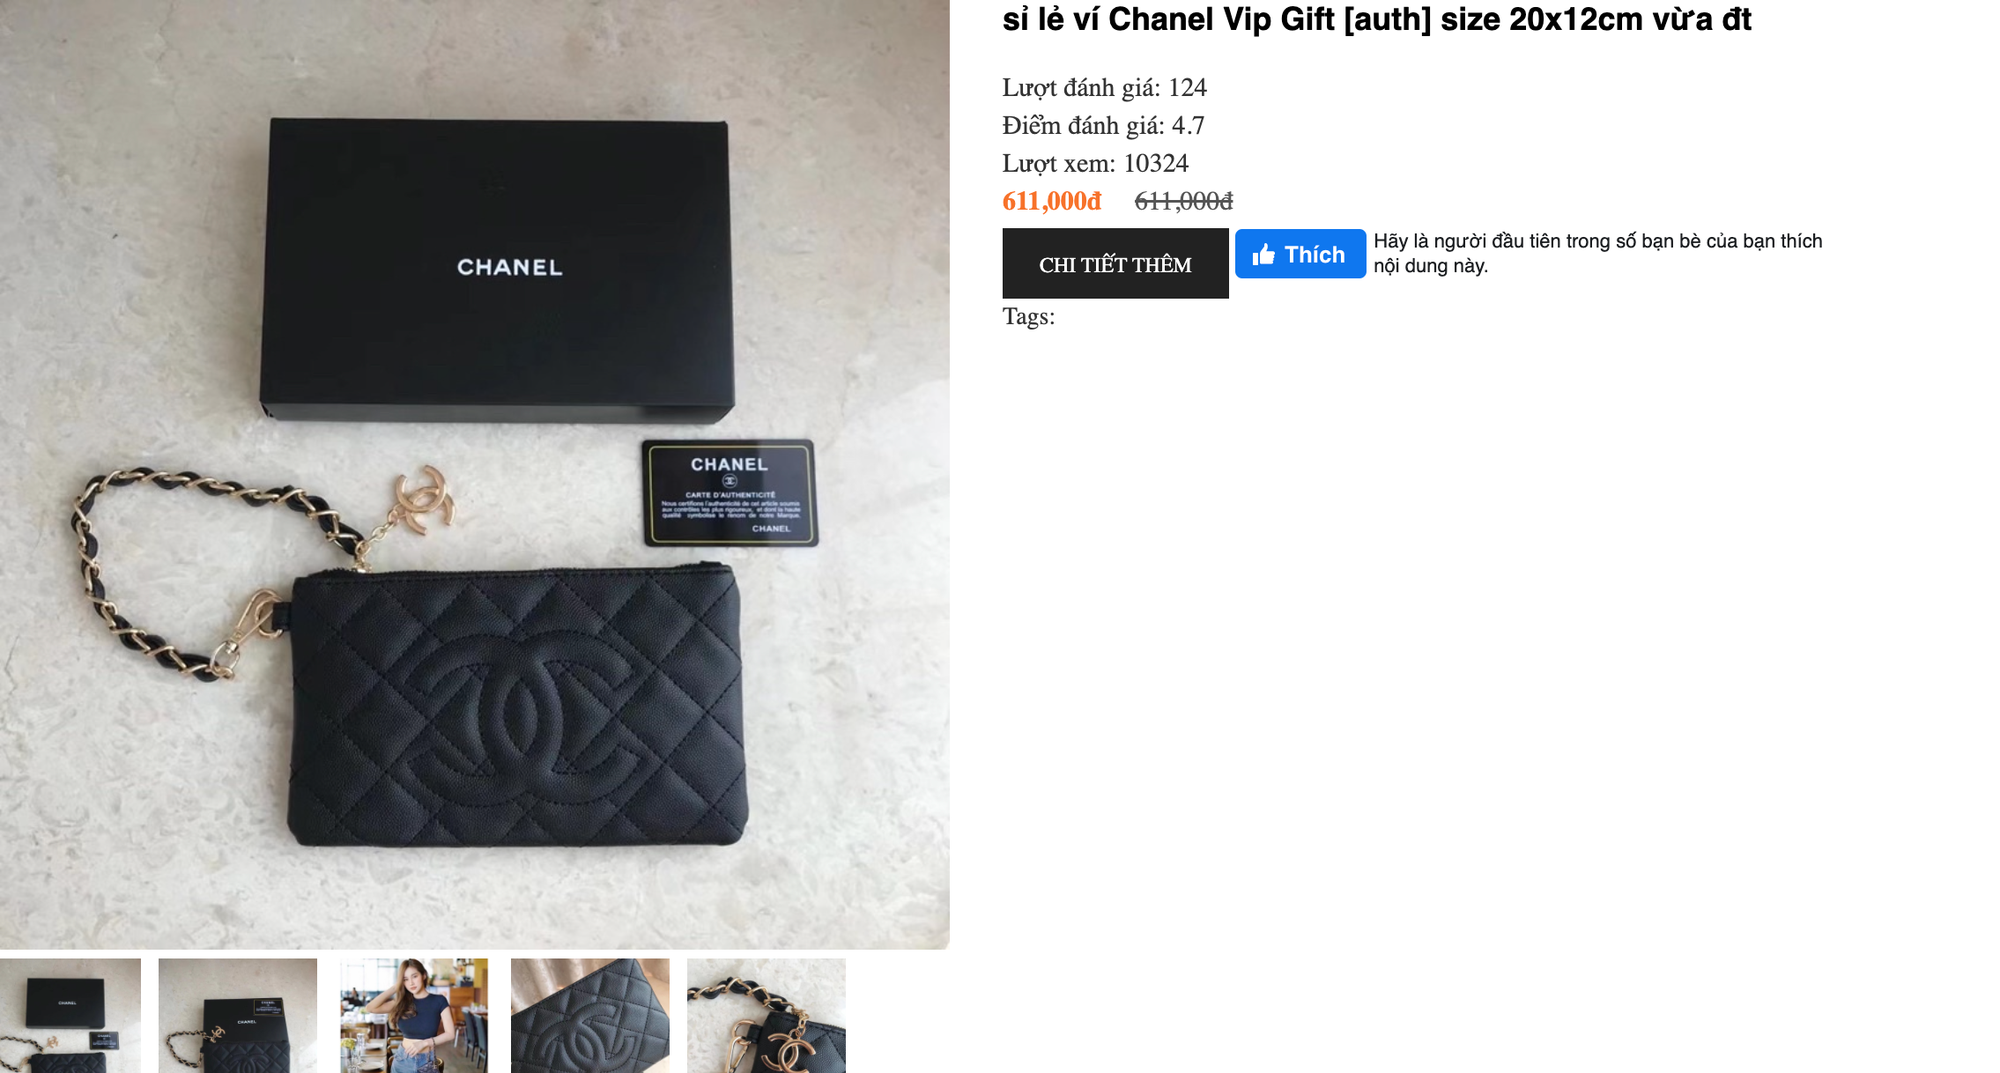 Mua VIP gift Chanel, Dior, Louis Vuitton... với giá chỉ từ 500k đến vài triệu: Muốn lừa tui hả? ĐỪNG MƠ!  - Ảnh 2.